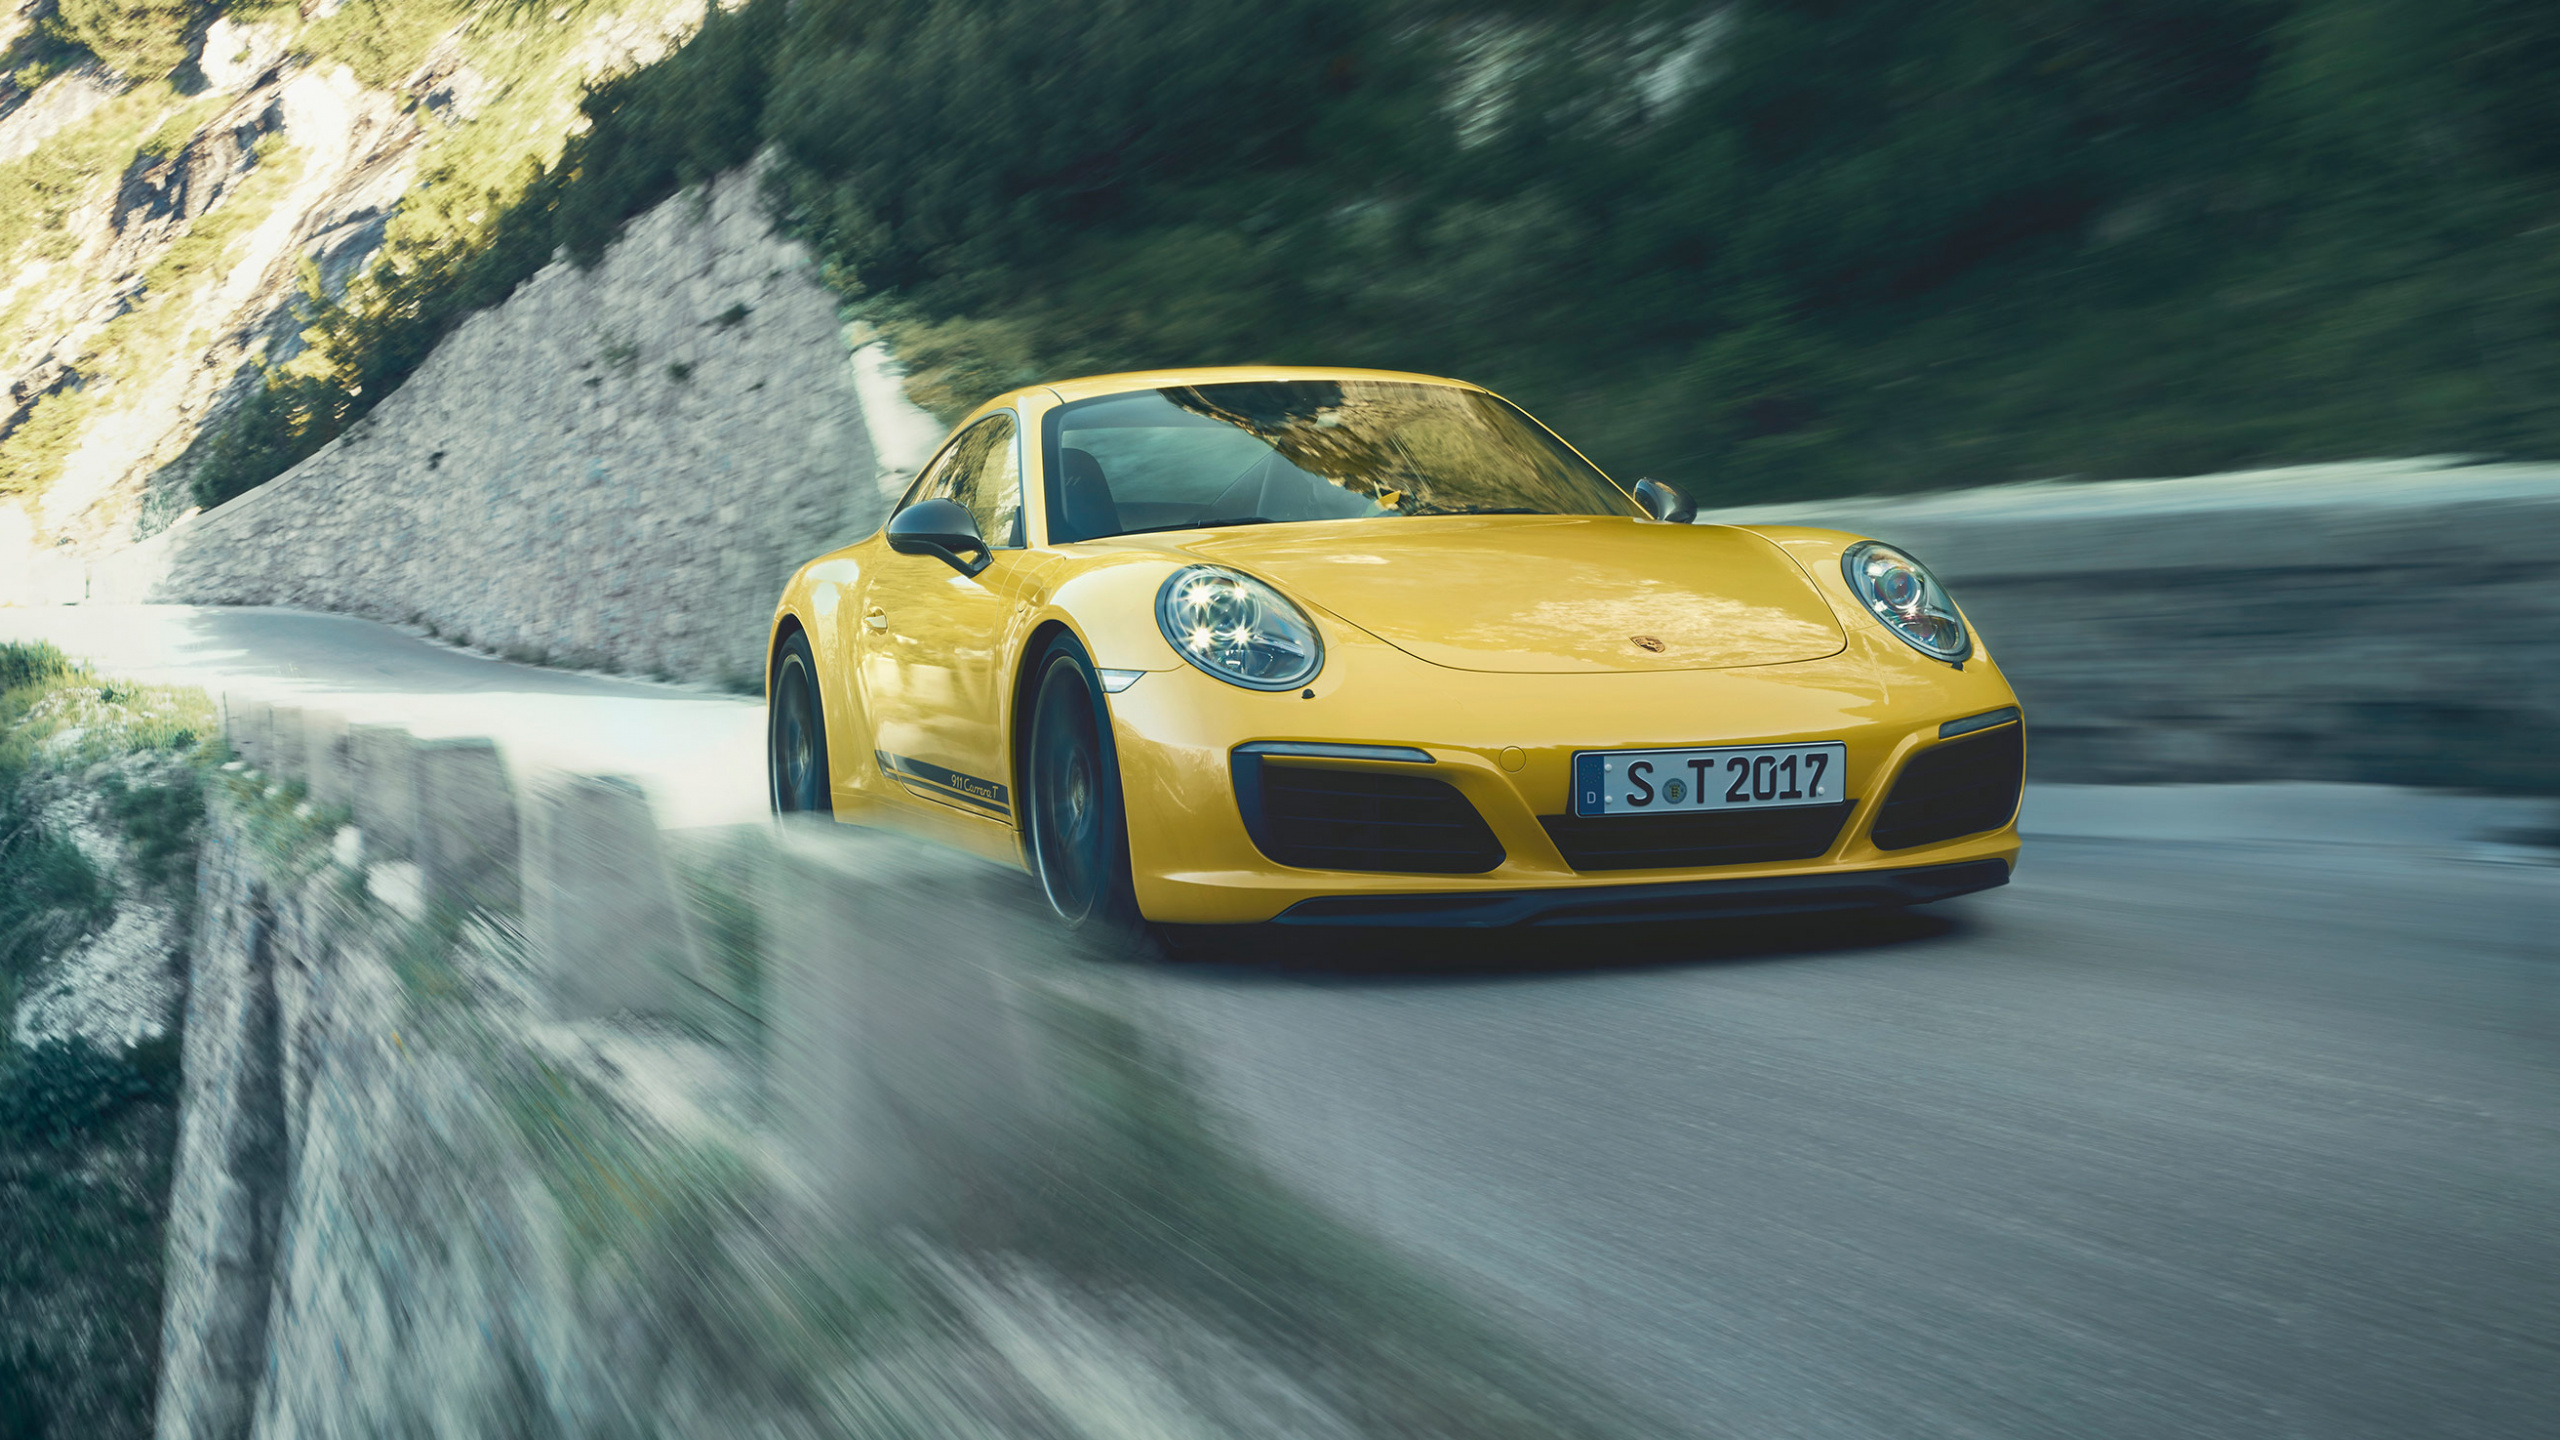 Porsche 911 Jaune Sur Route Pendant la Journée. Wallpaper in 2560x1440 Resolution